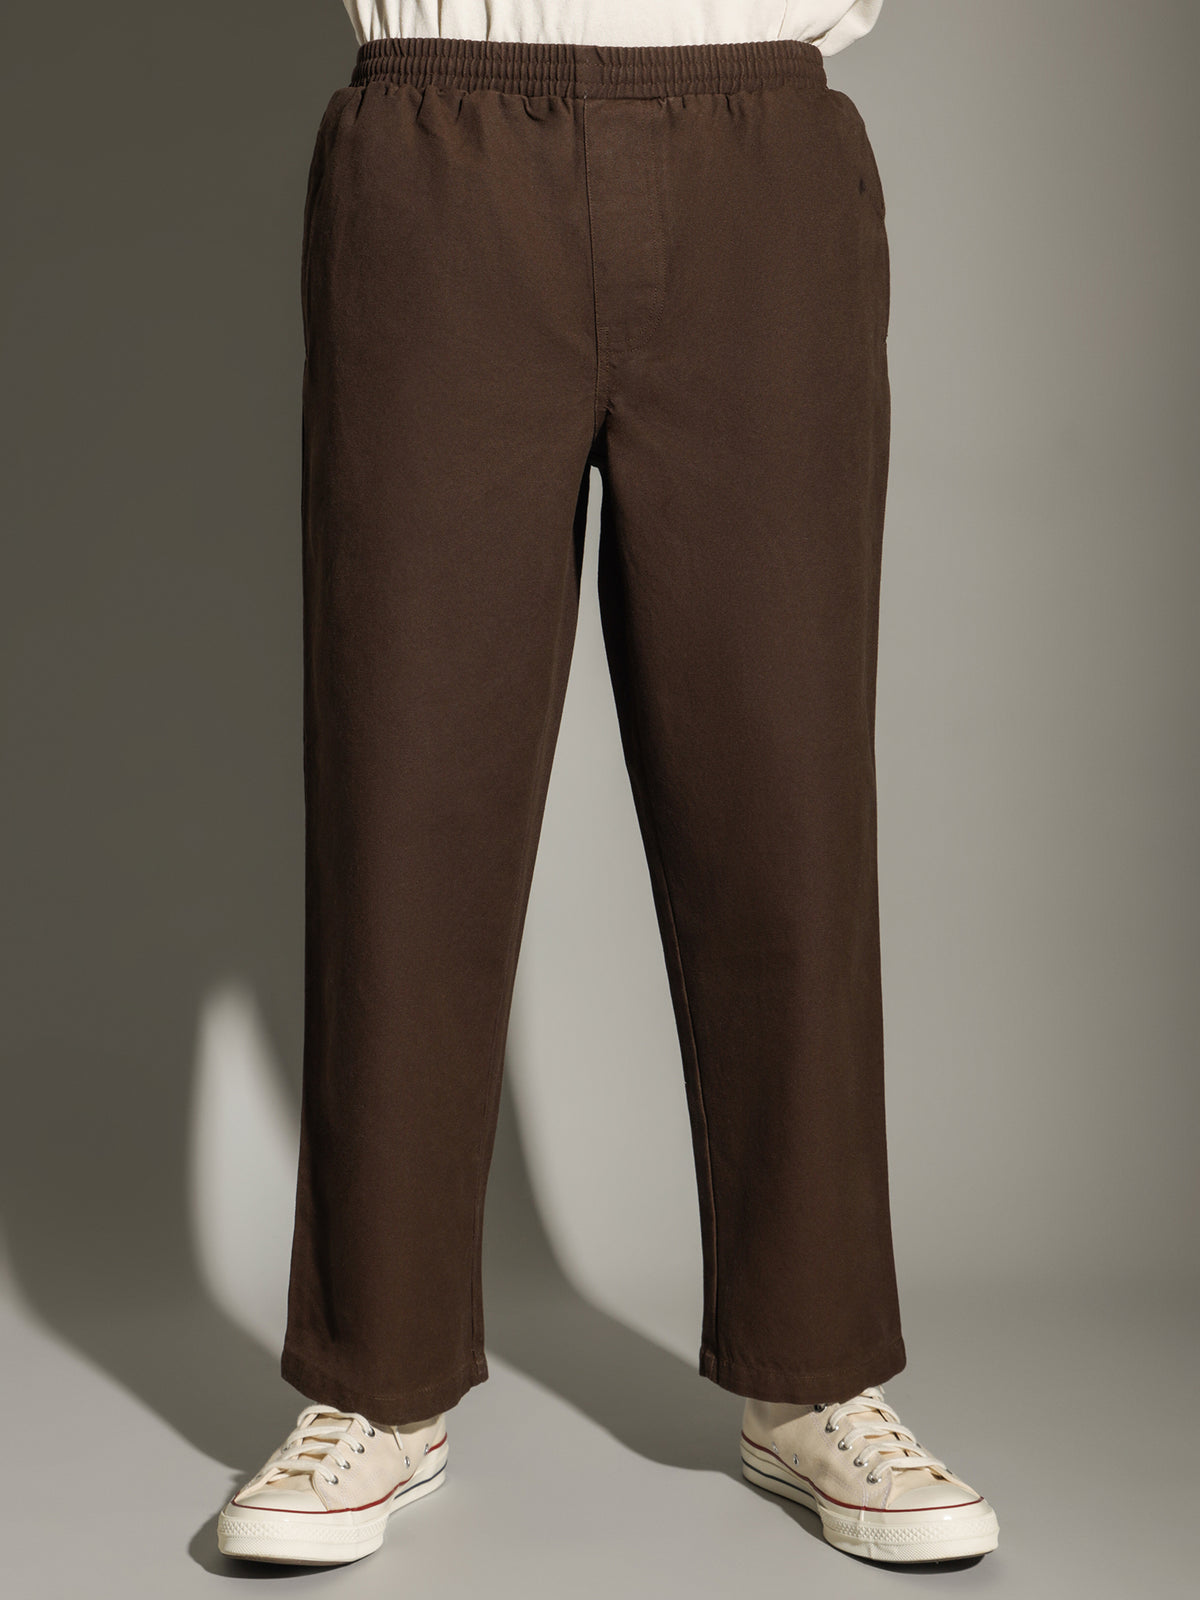 91 Pants in Brown